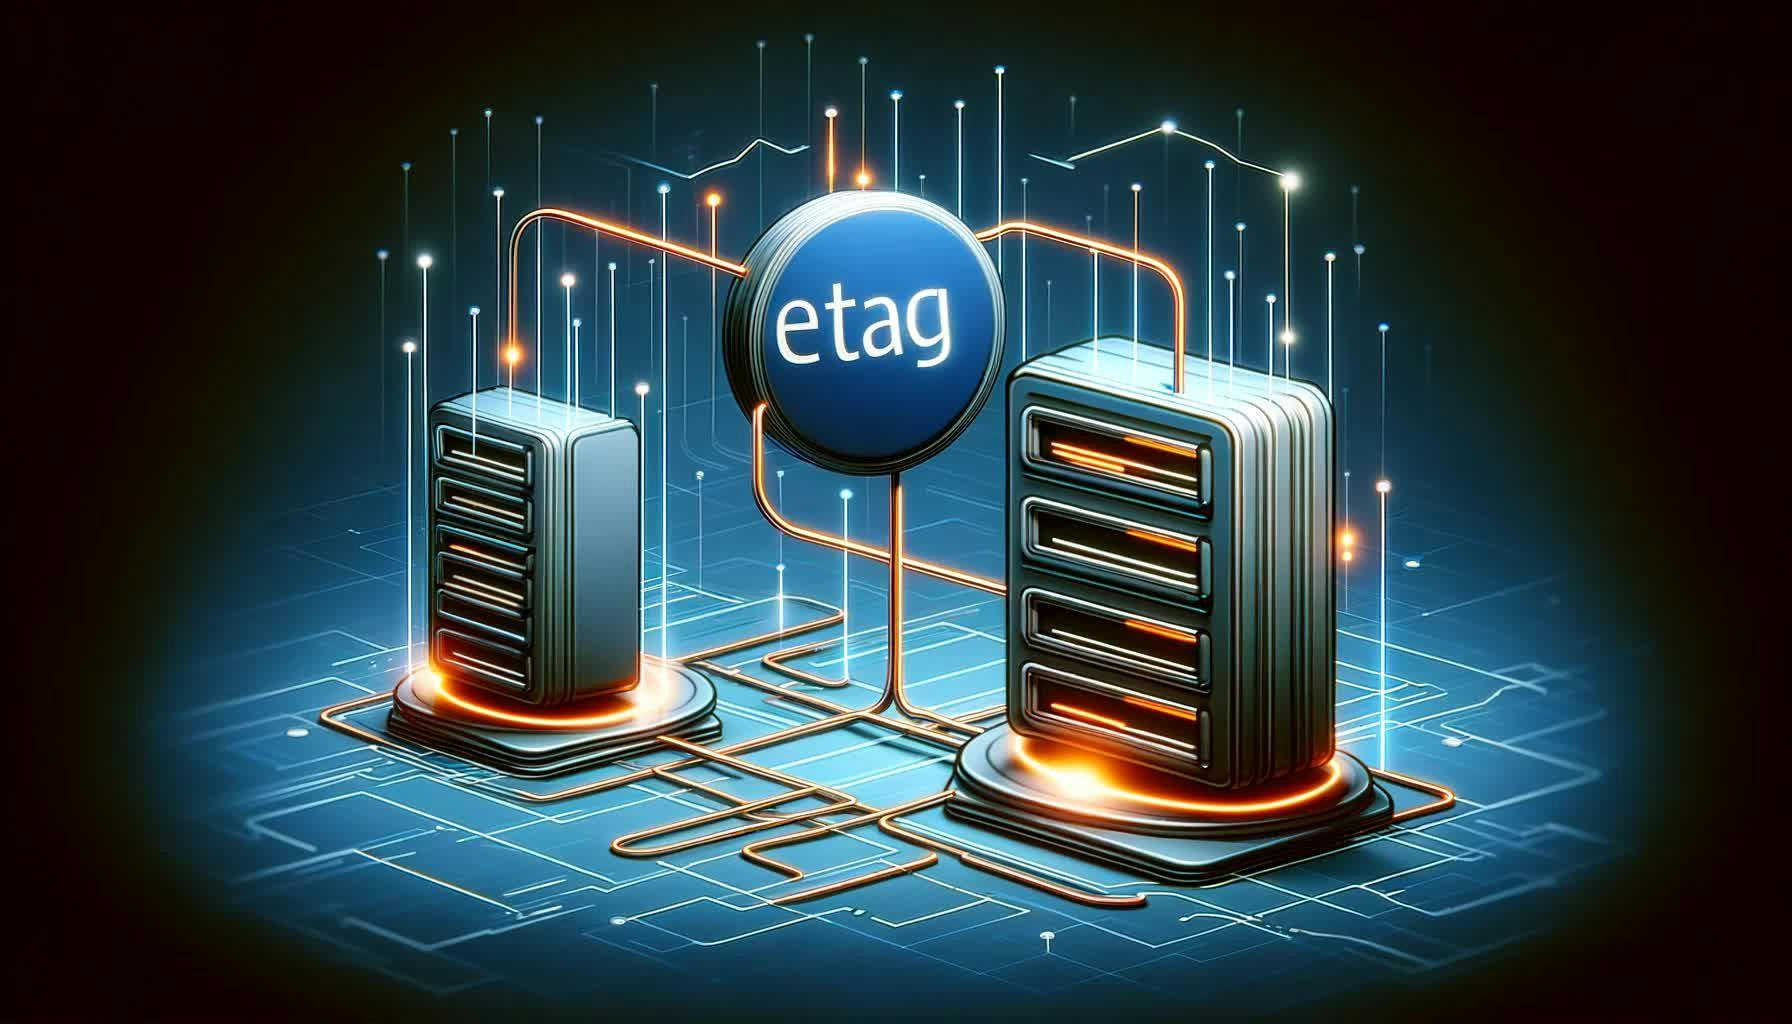 ETag (Entity Tag)